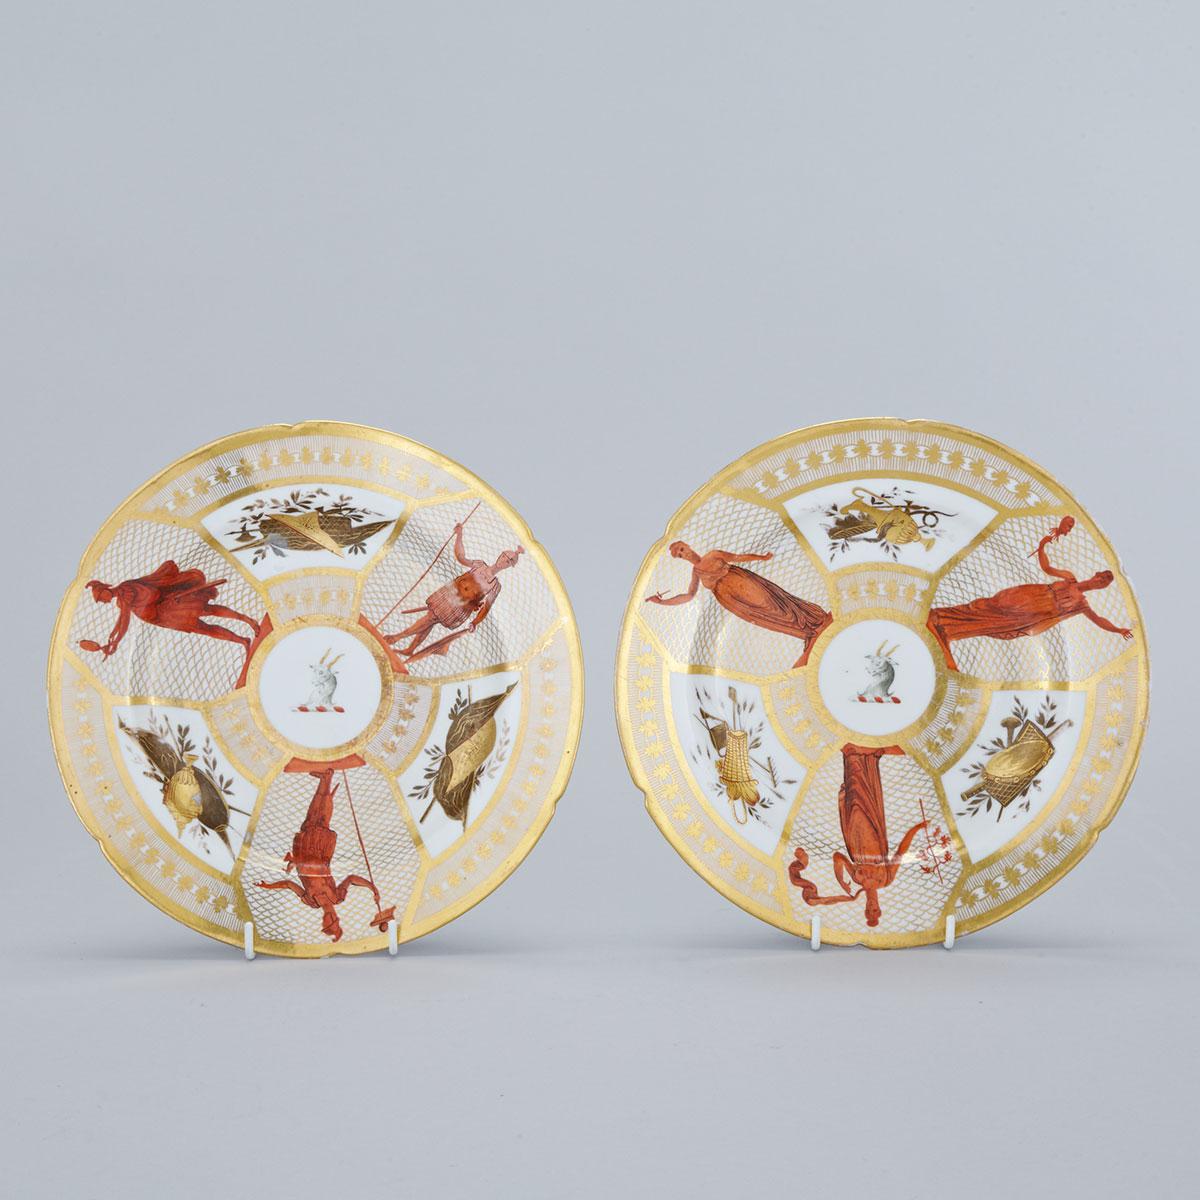 Pair of Coalport Plates, c.1805-10